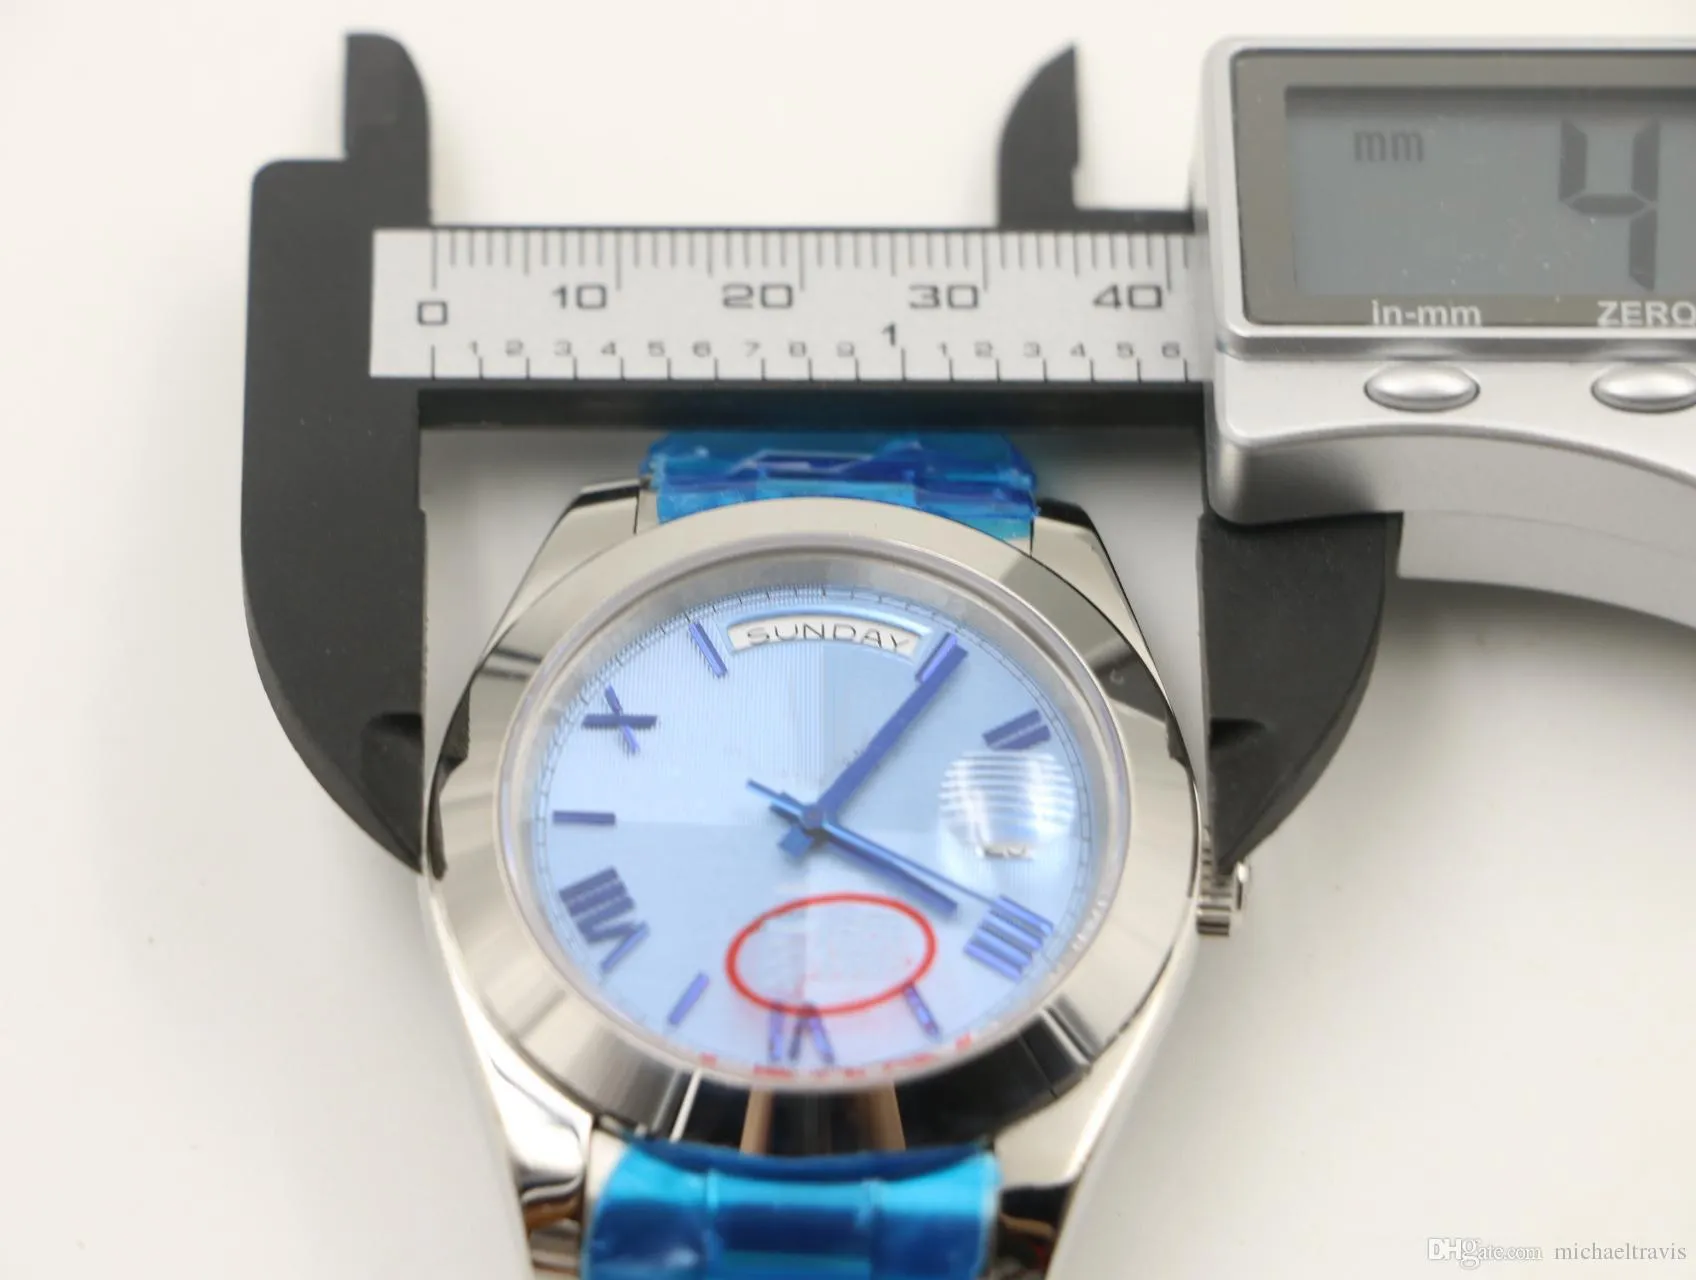 40 MM Klassiek automatisch herenhorloge Horloges tonen ronde blauw gestreepte wijzerplaat president riem roestvrij268i